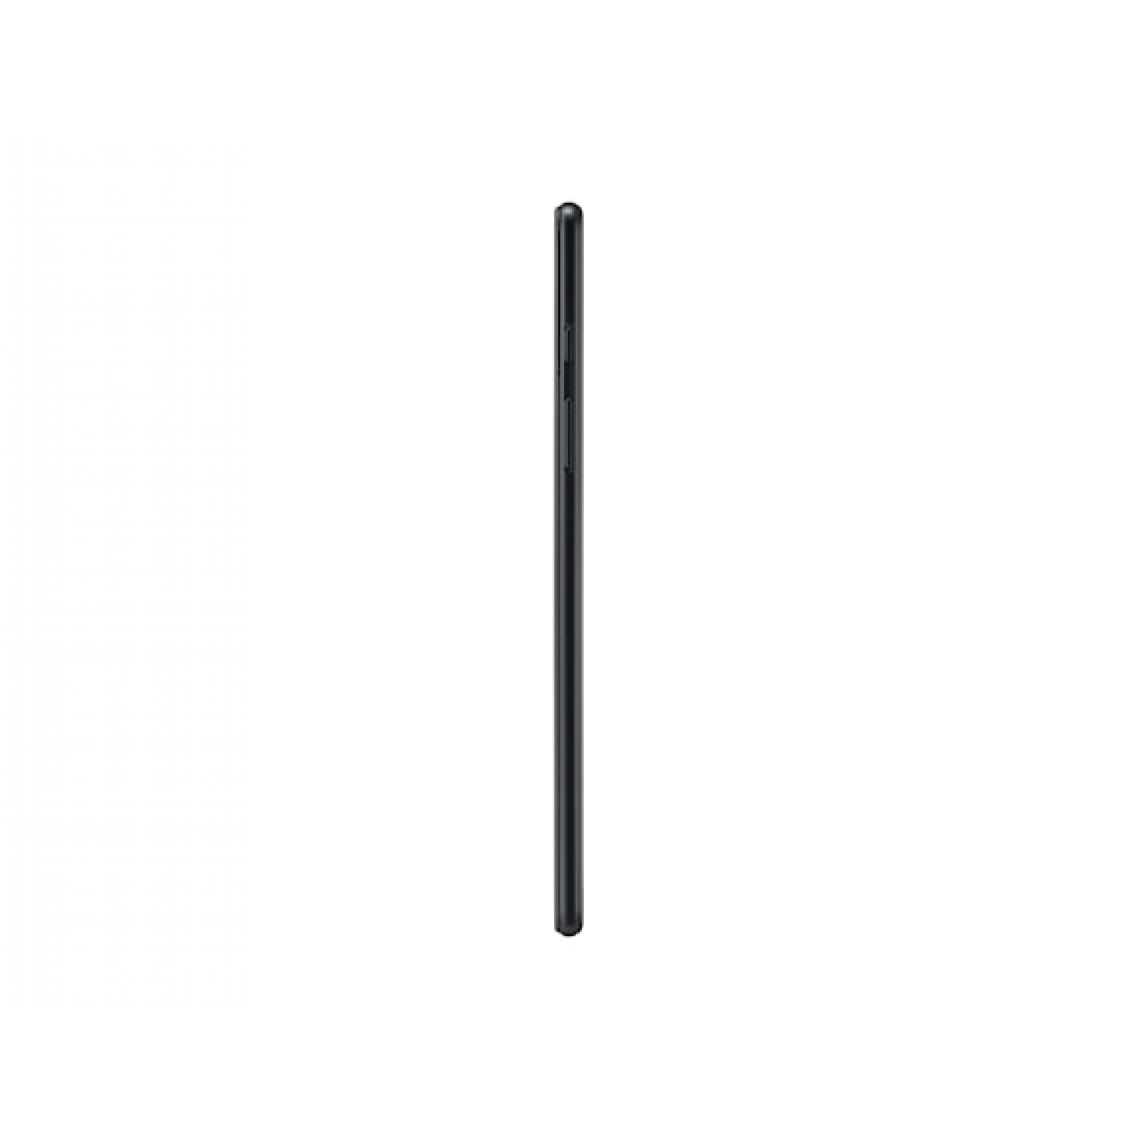 Samsung - T290 Galaxy Tab A 8.0 (2019) 32GB only WiFi black EU - Tablette Windows